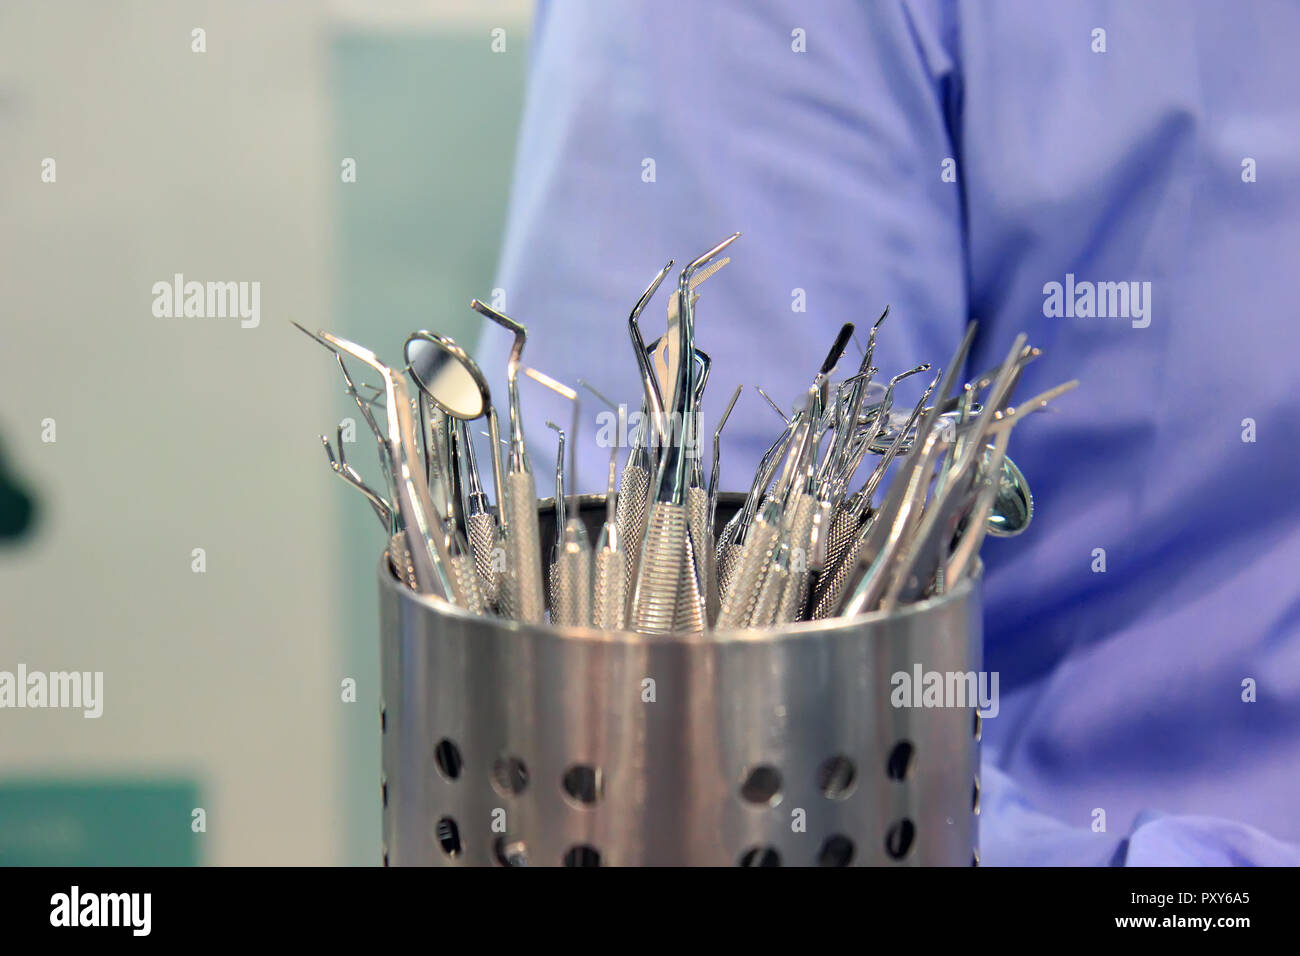 Dentisti strumenti. Acciaio inossidabile apparecchiature dentali. Foto Stock